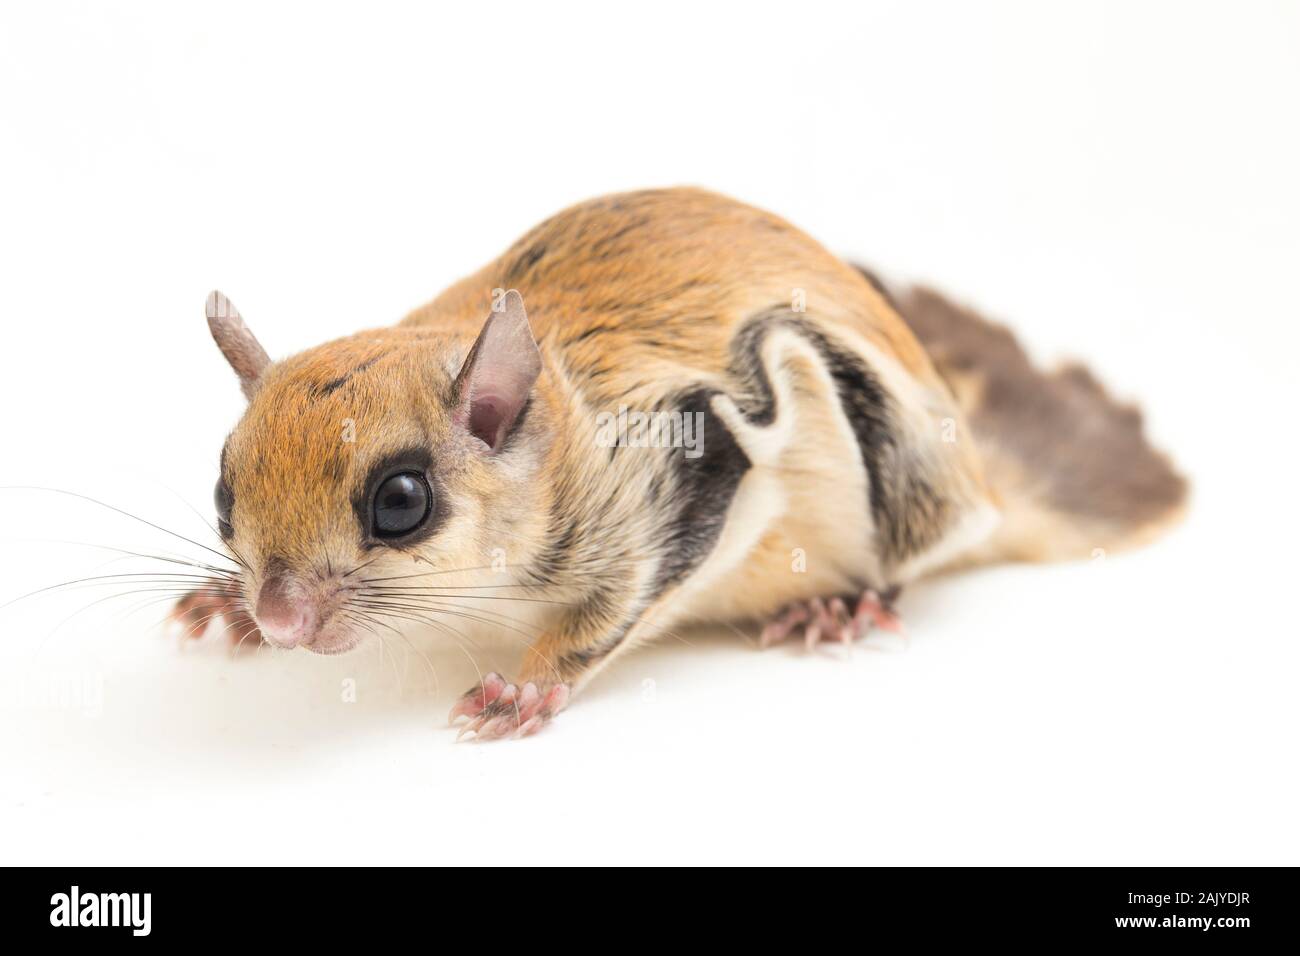 L'écureuil volant javanais (Iomys horsfieldii) est une espèce de la sous-famille des Trochilinae. Isolé sur fond blanc Banque D'Images